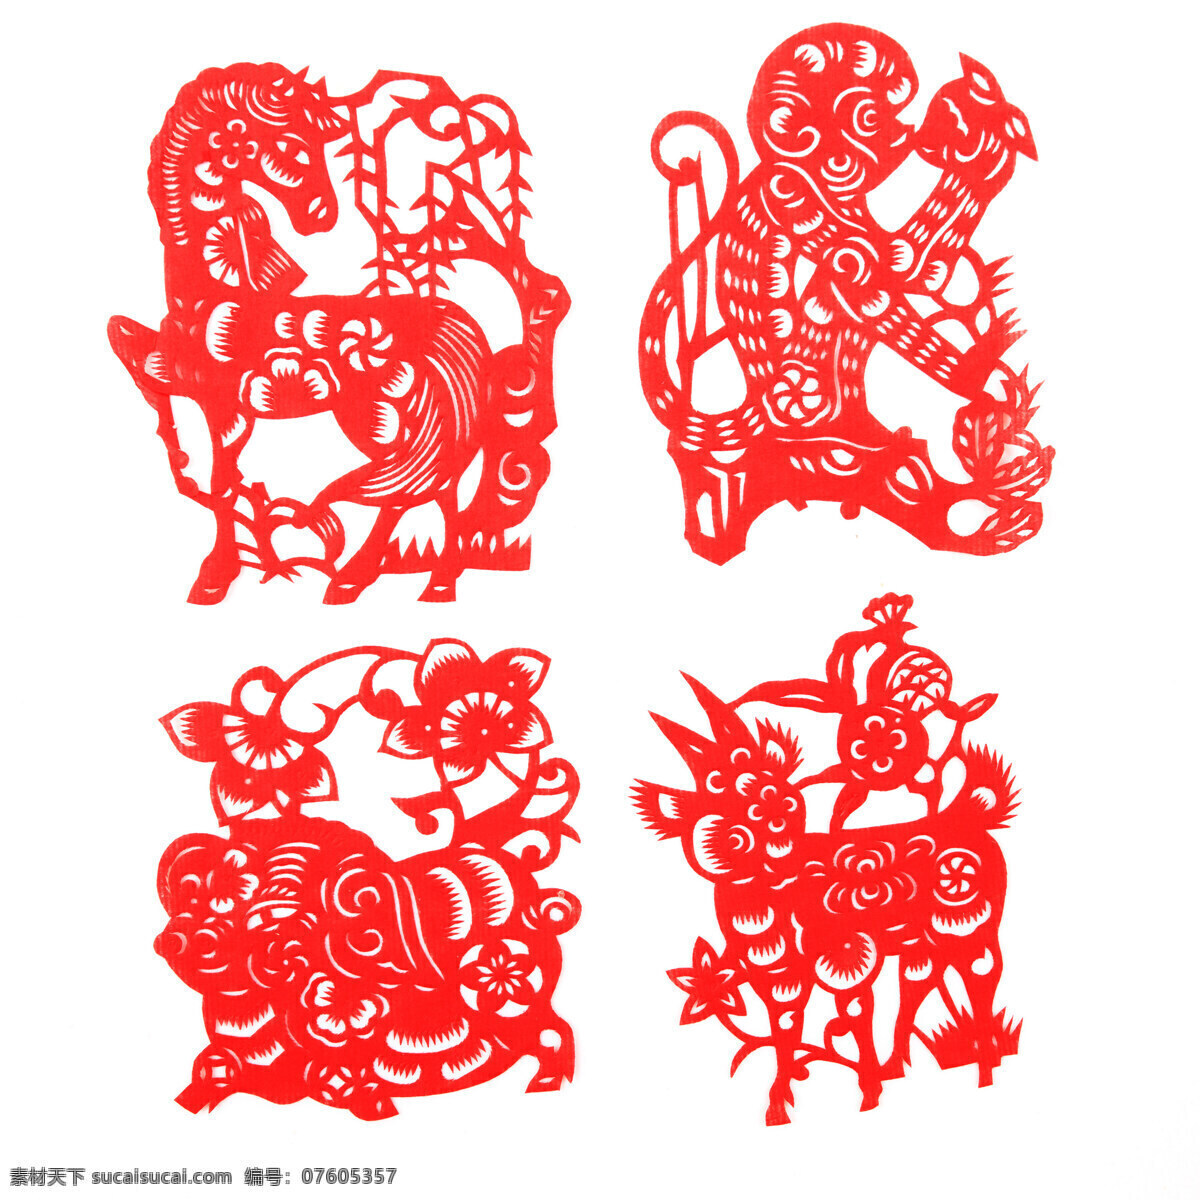 传统文化 红色 猴 剪纸 剪纸马 剪纸生肖 马年 生肖 设计素材 模板下载 马 羊 猪 文化艺术 节日素材 2015羊年